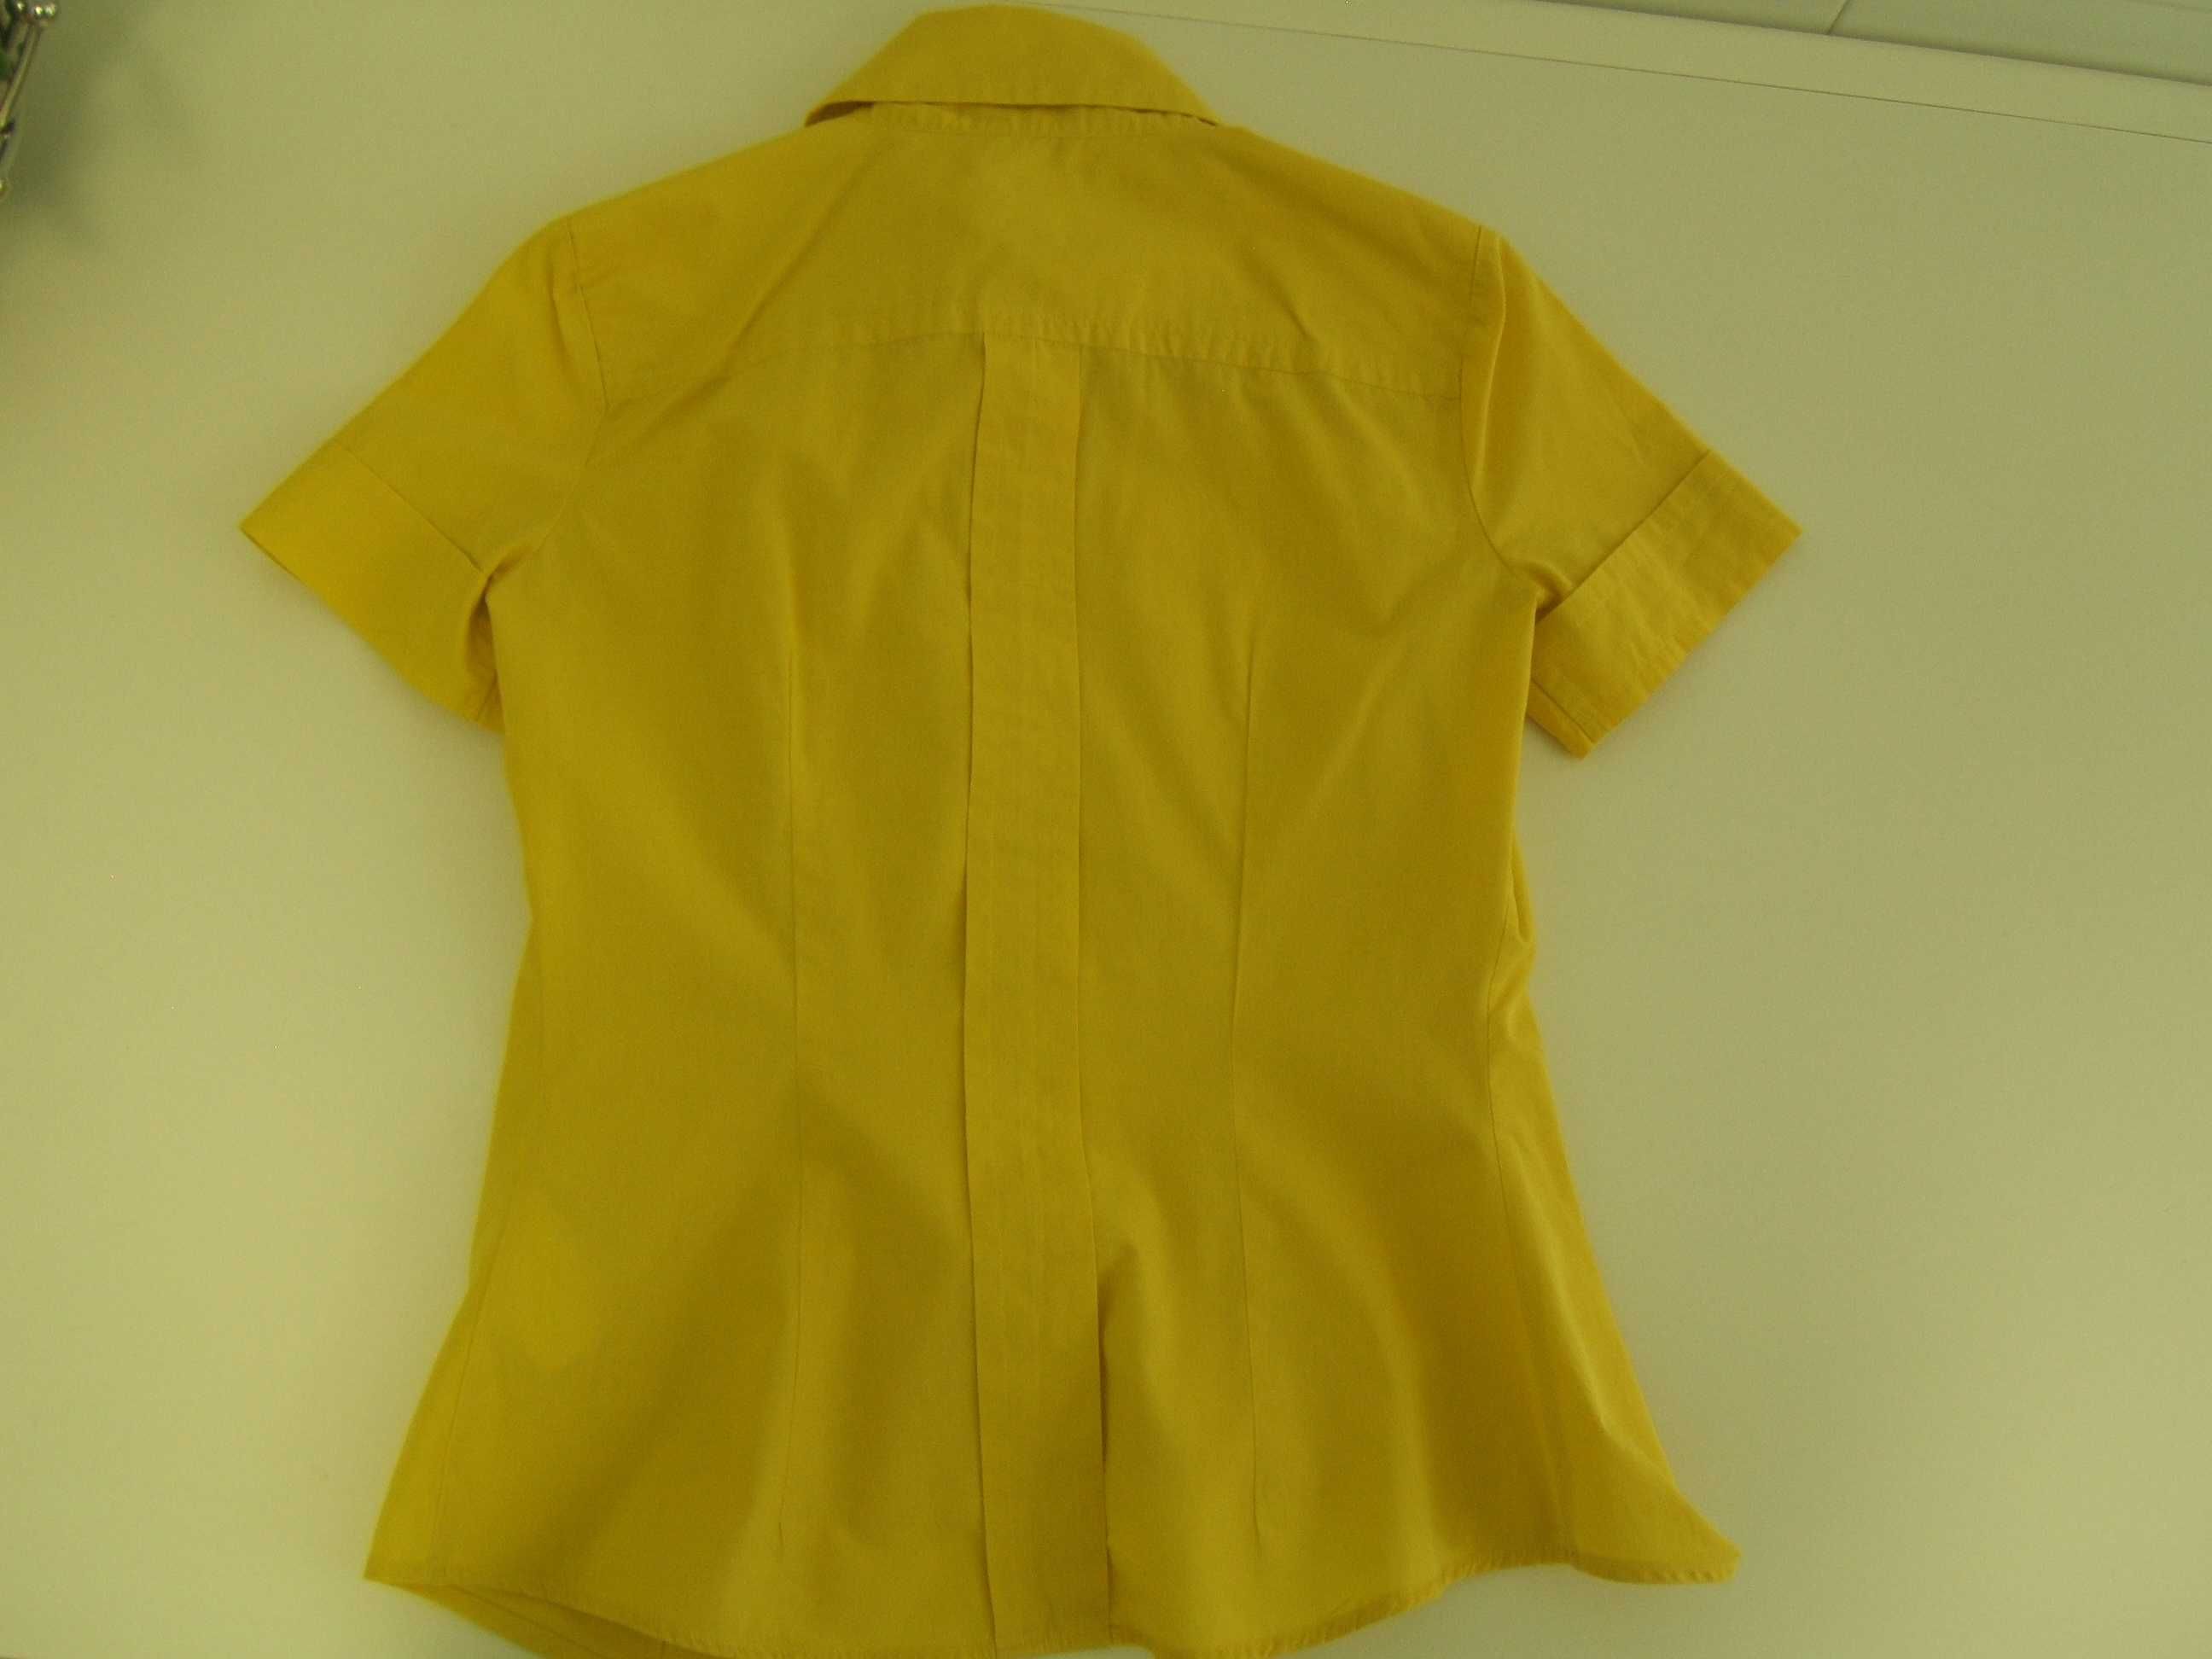 Camisa amarela da Benetton